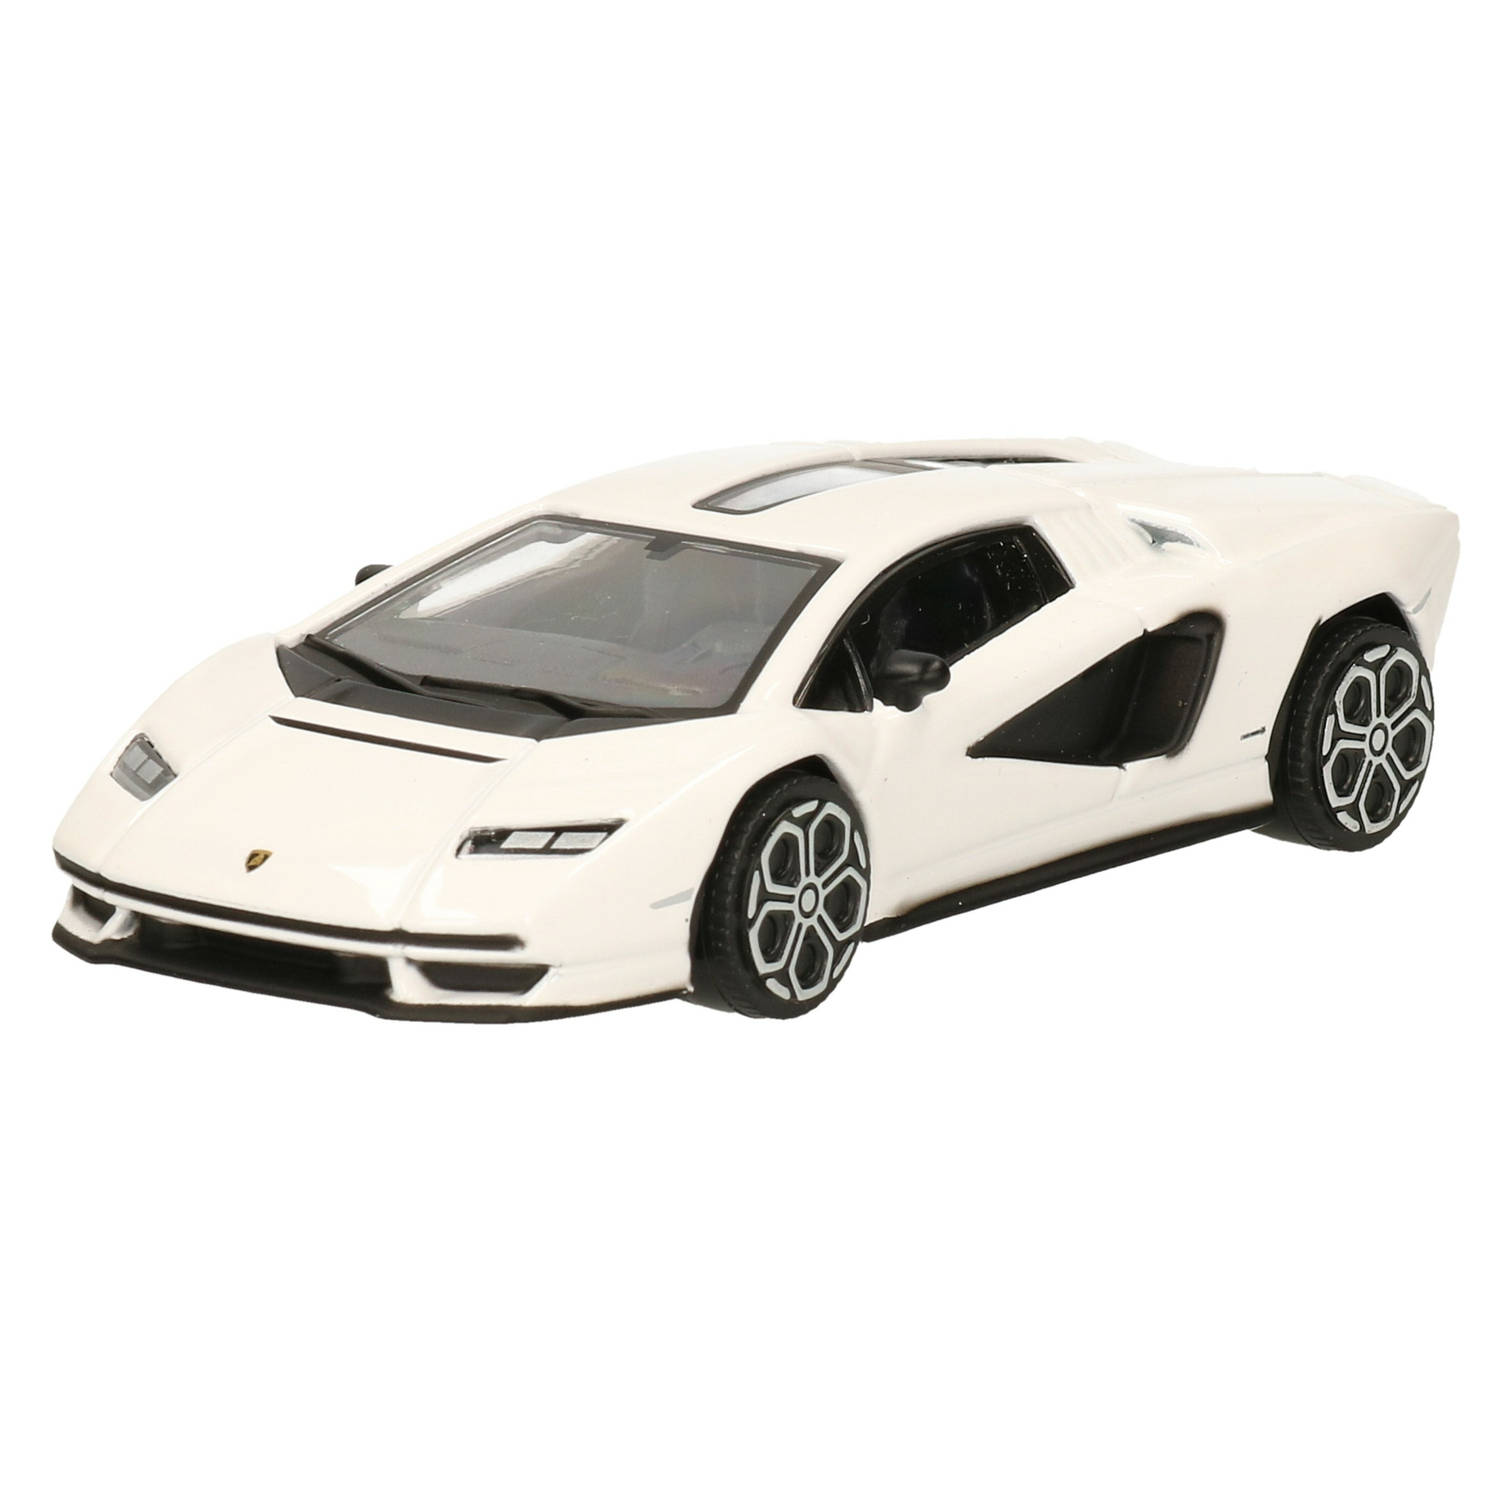 Modelauto-speelgoedauto Lamborghini Countach Schaal 1:43-11 X 5 X 3 Cm Speelgoed Auto's